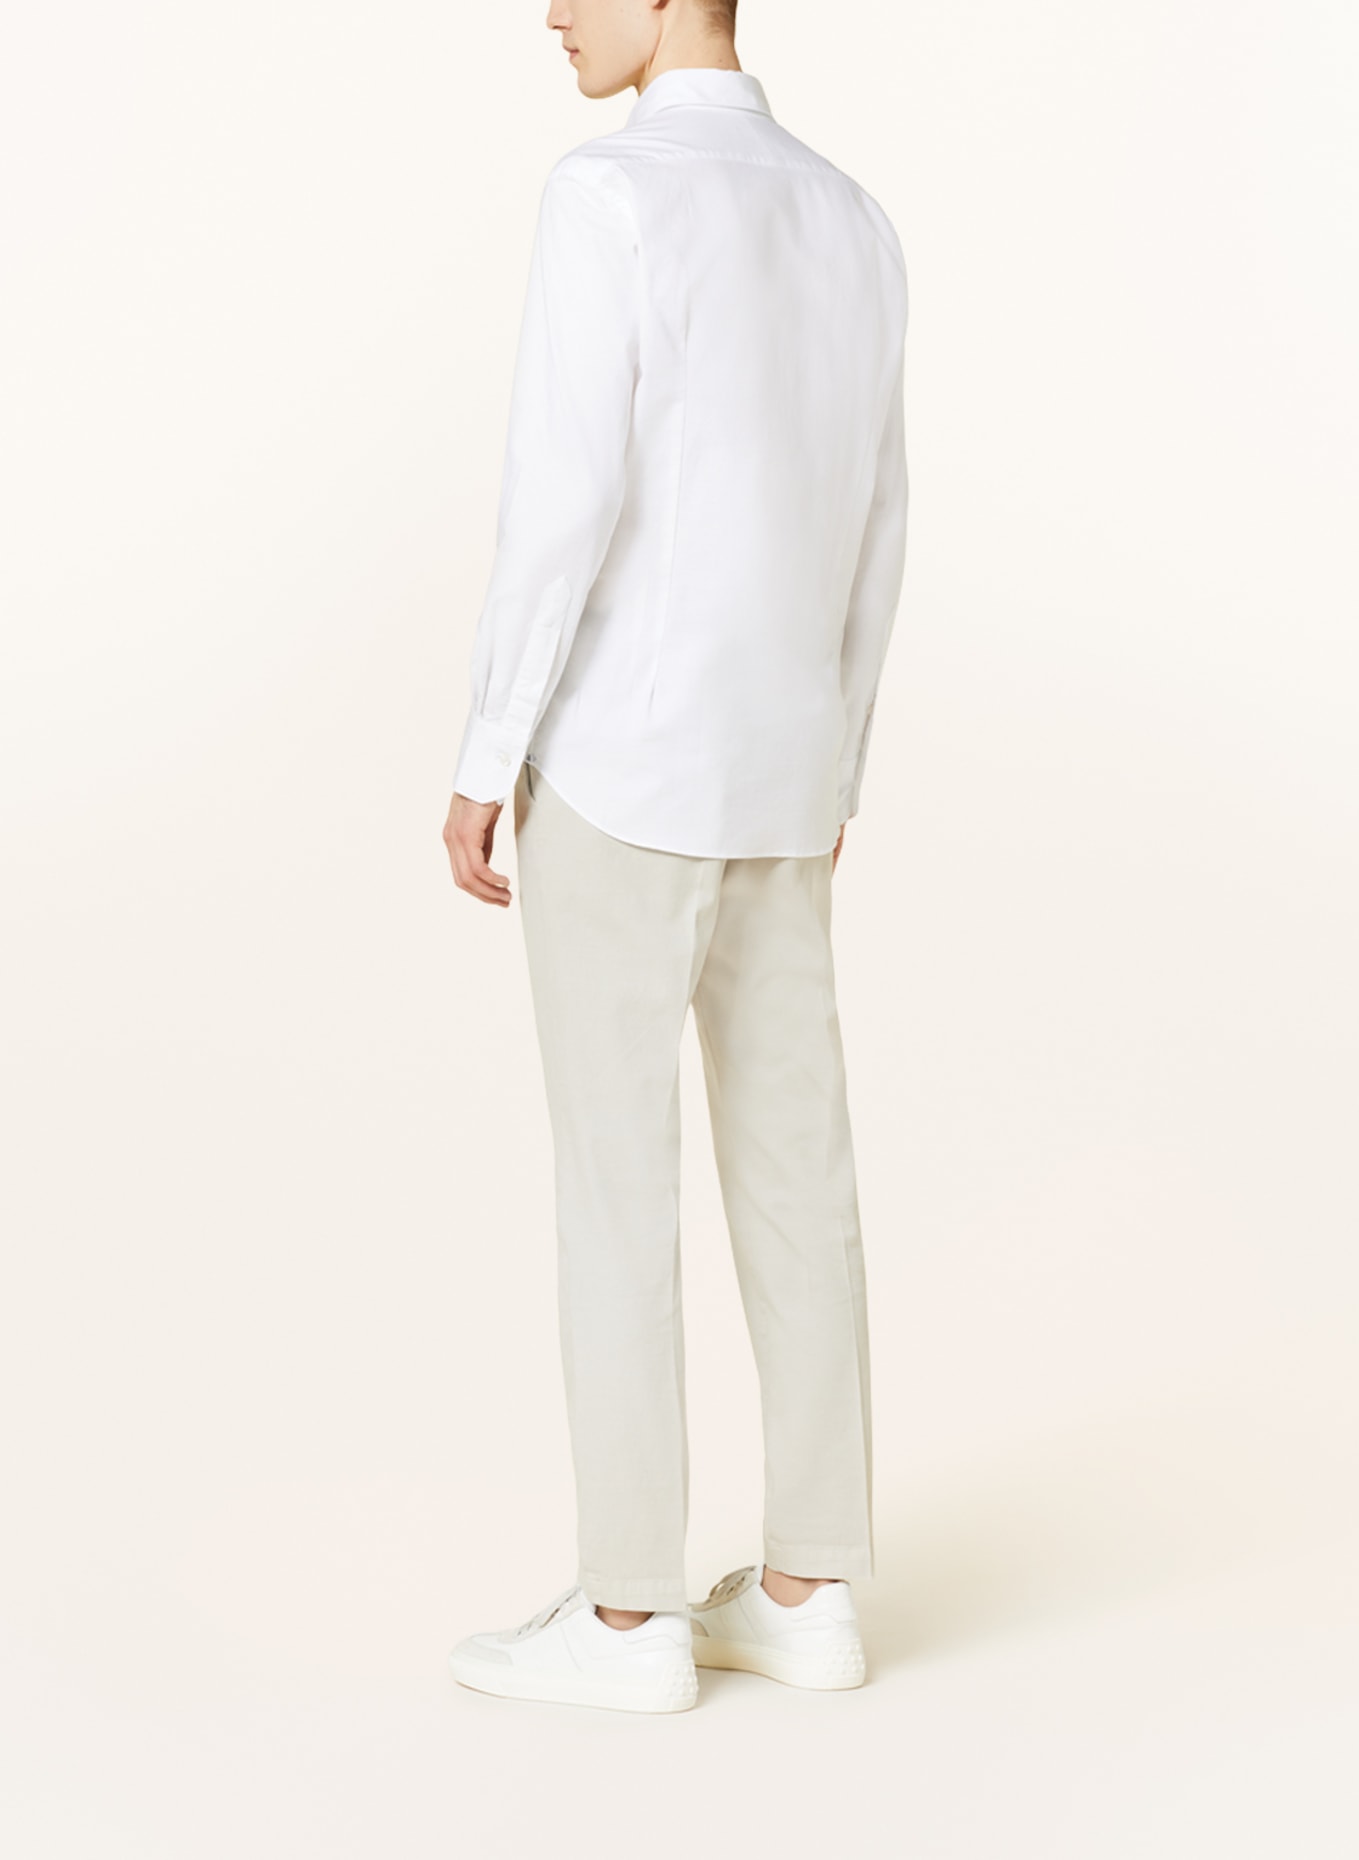 ARTIGIANO Shirt classic fit, Color: WHITE (Image 3)